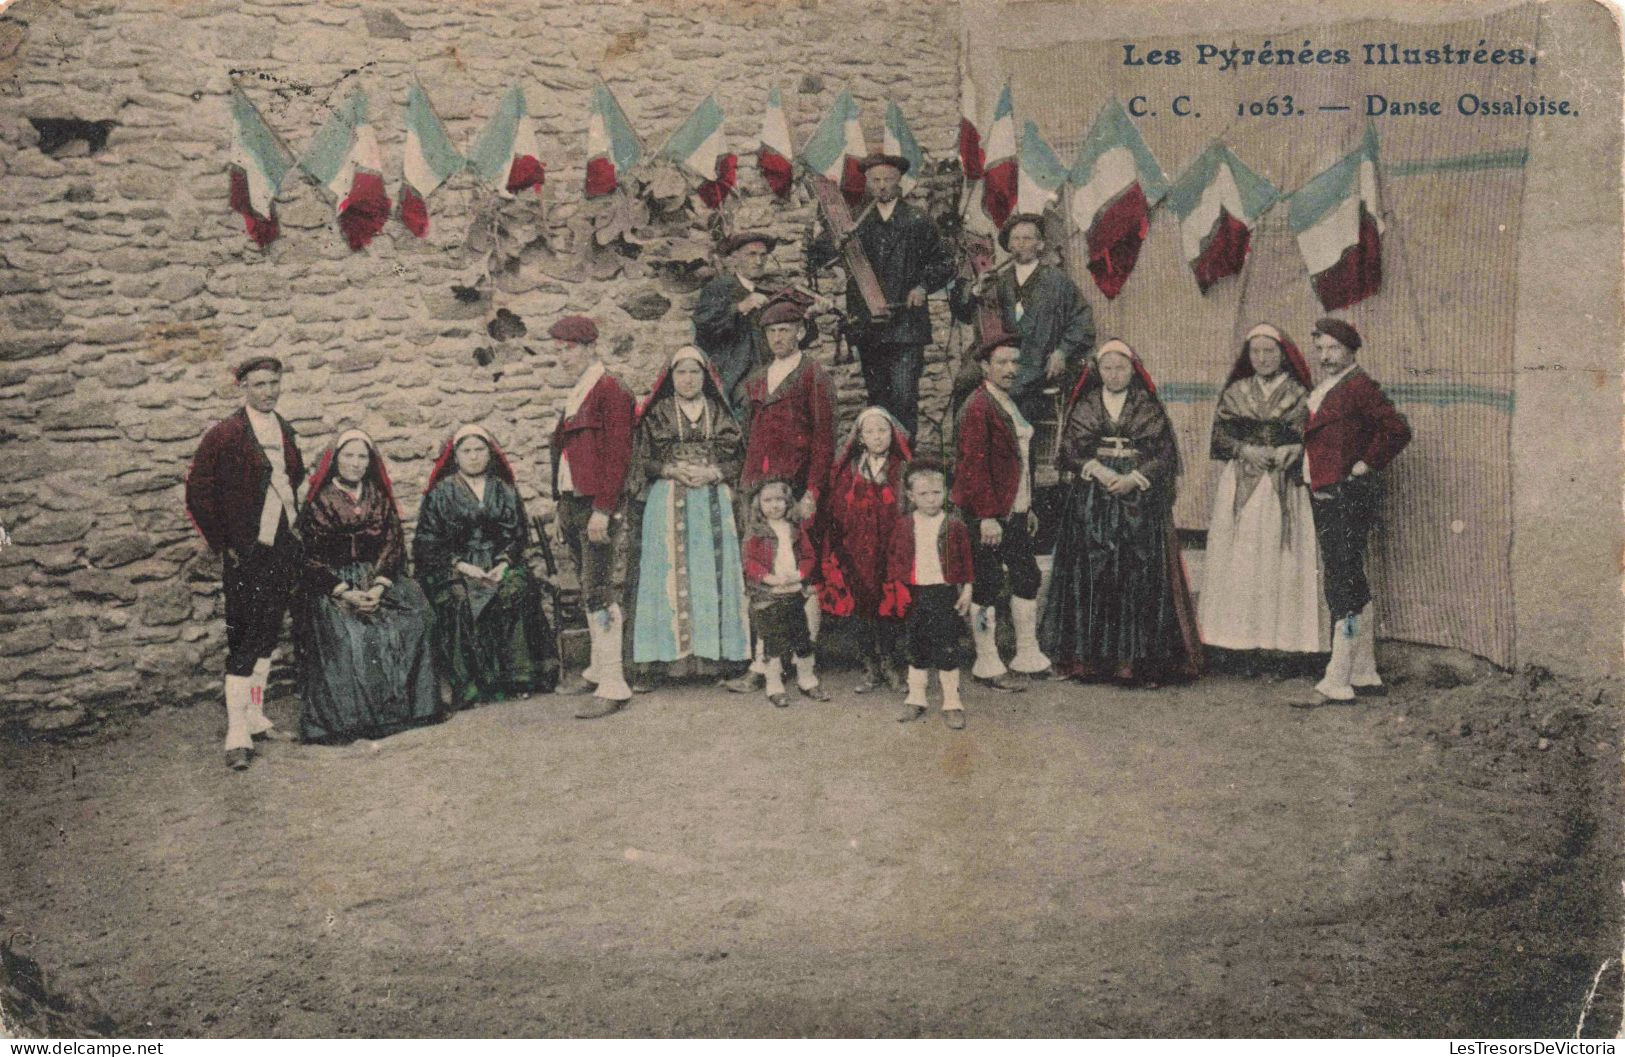 PHOTOGRAPHIE - Danse Ossaloise - Les Pyrénées Illustrées - Colorisé - Carte Postale Ancienne - Fotografie